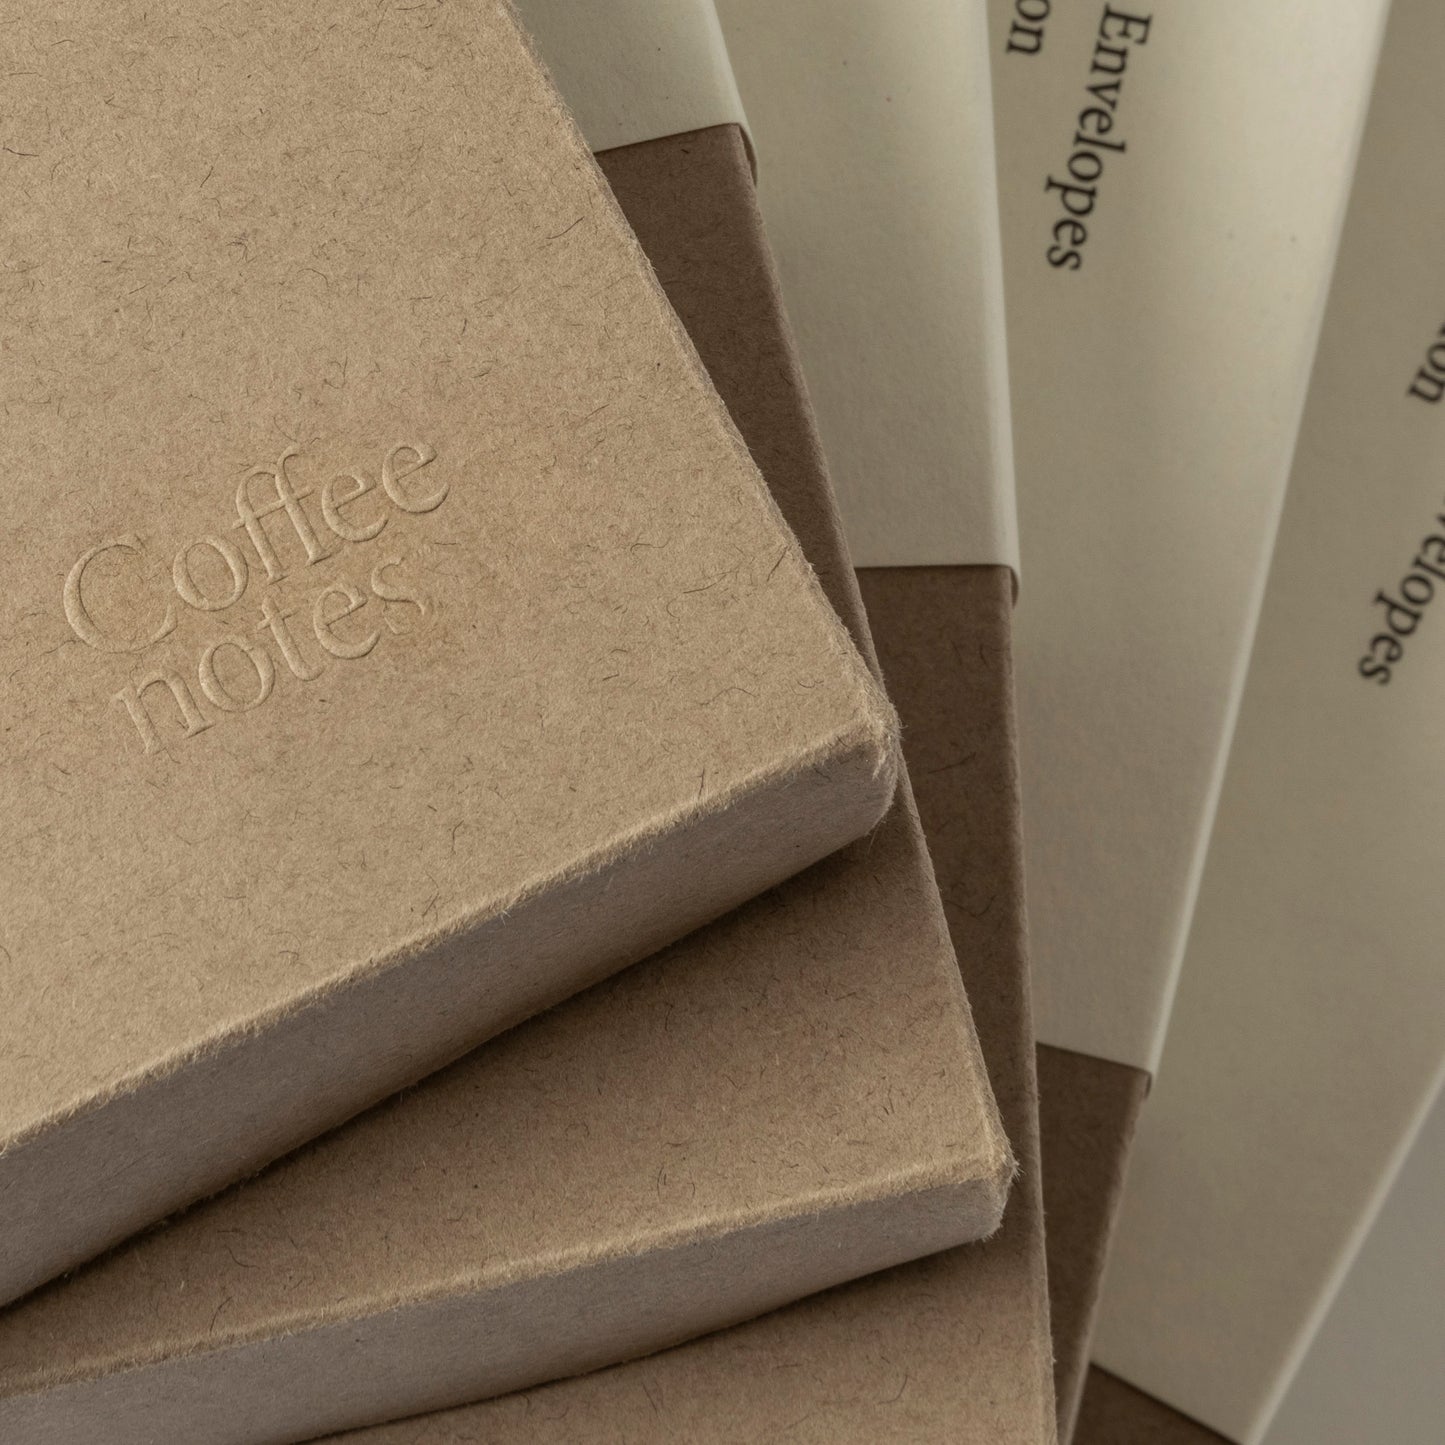 Luxury Sustainable Notecard Box Set